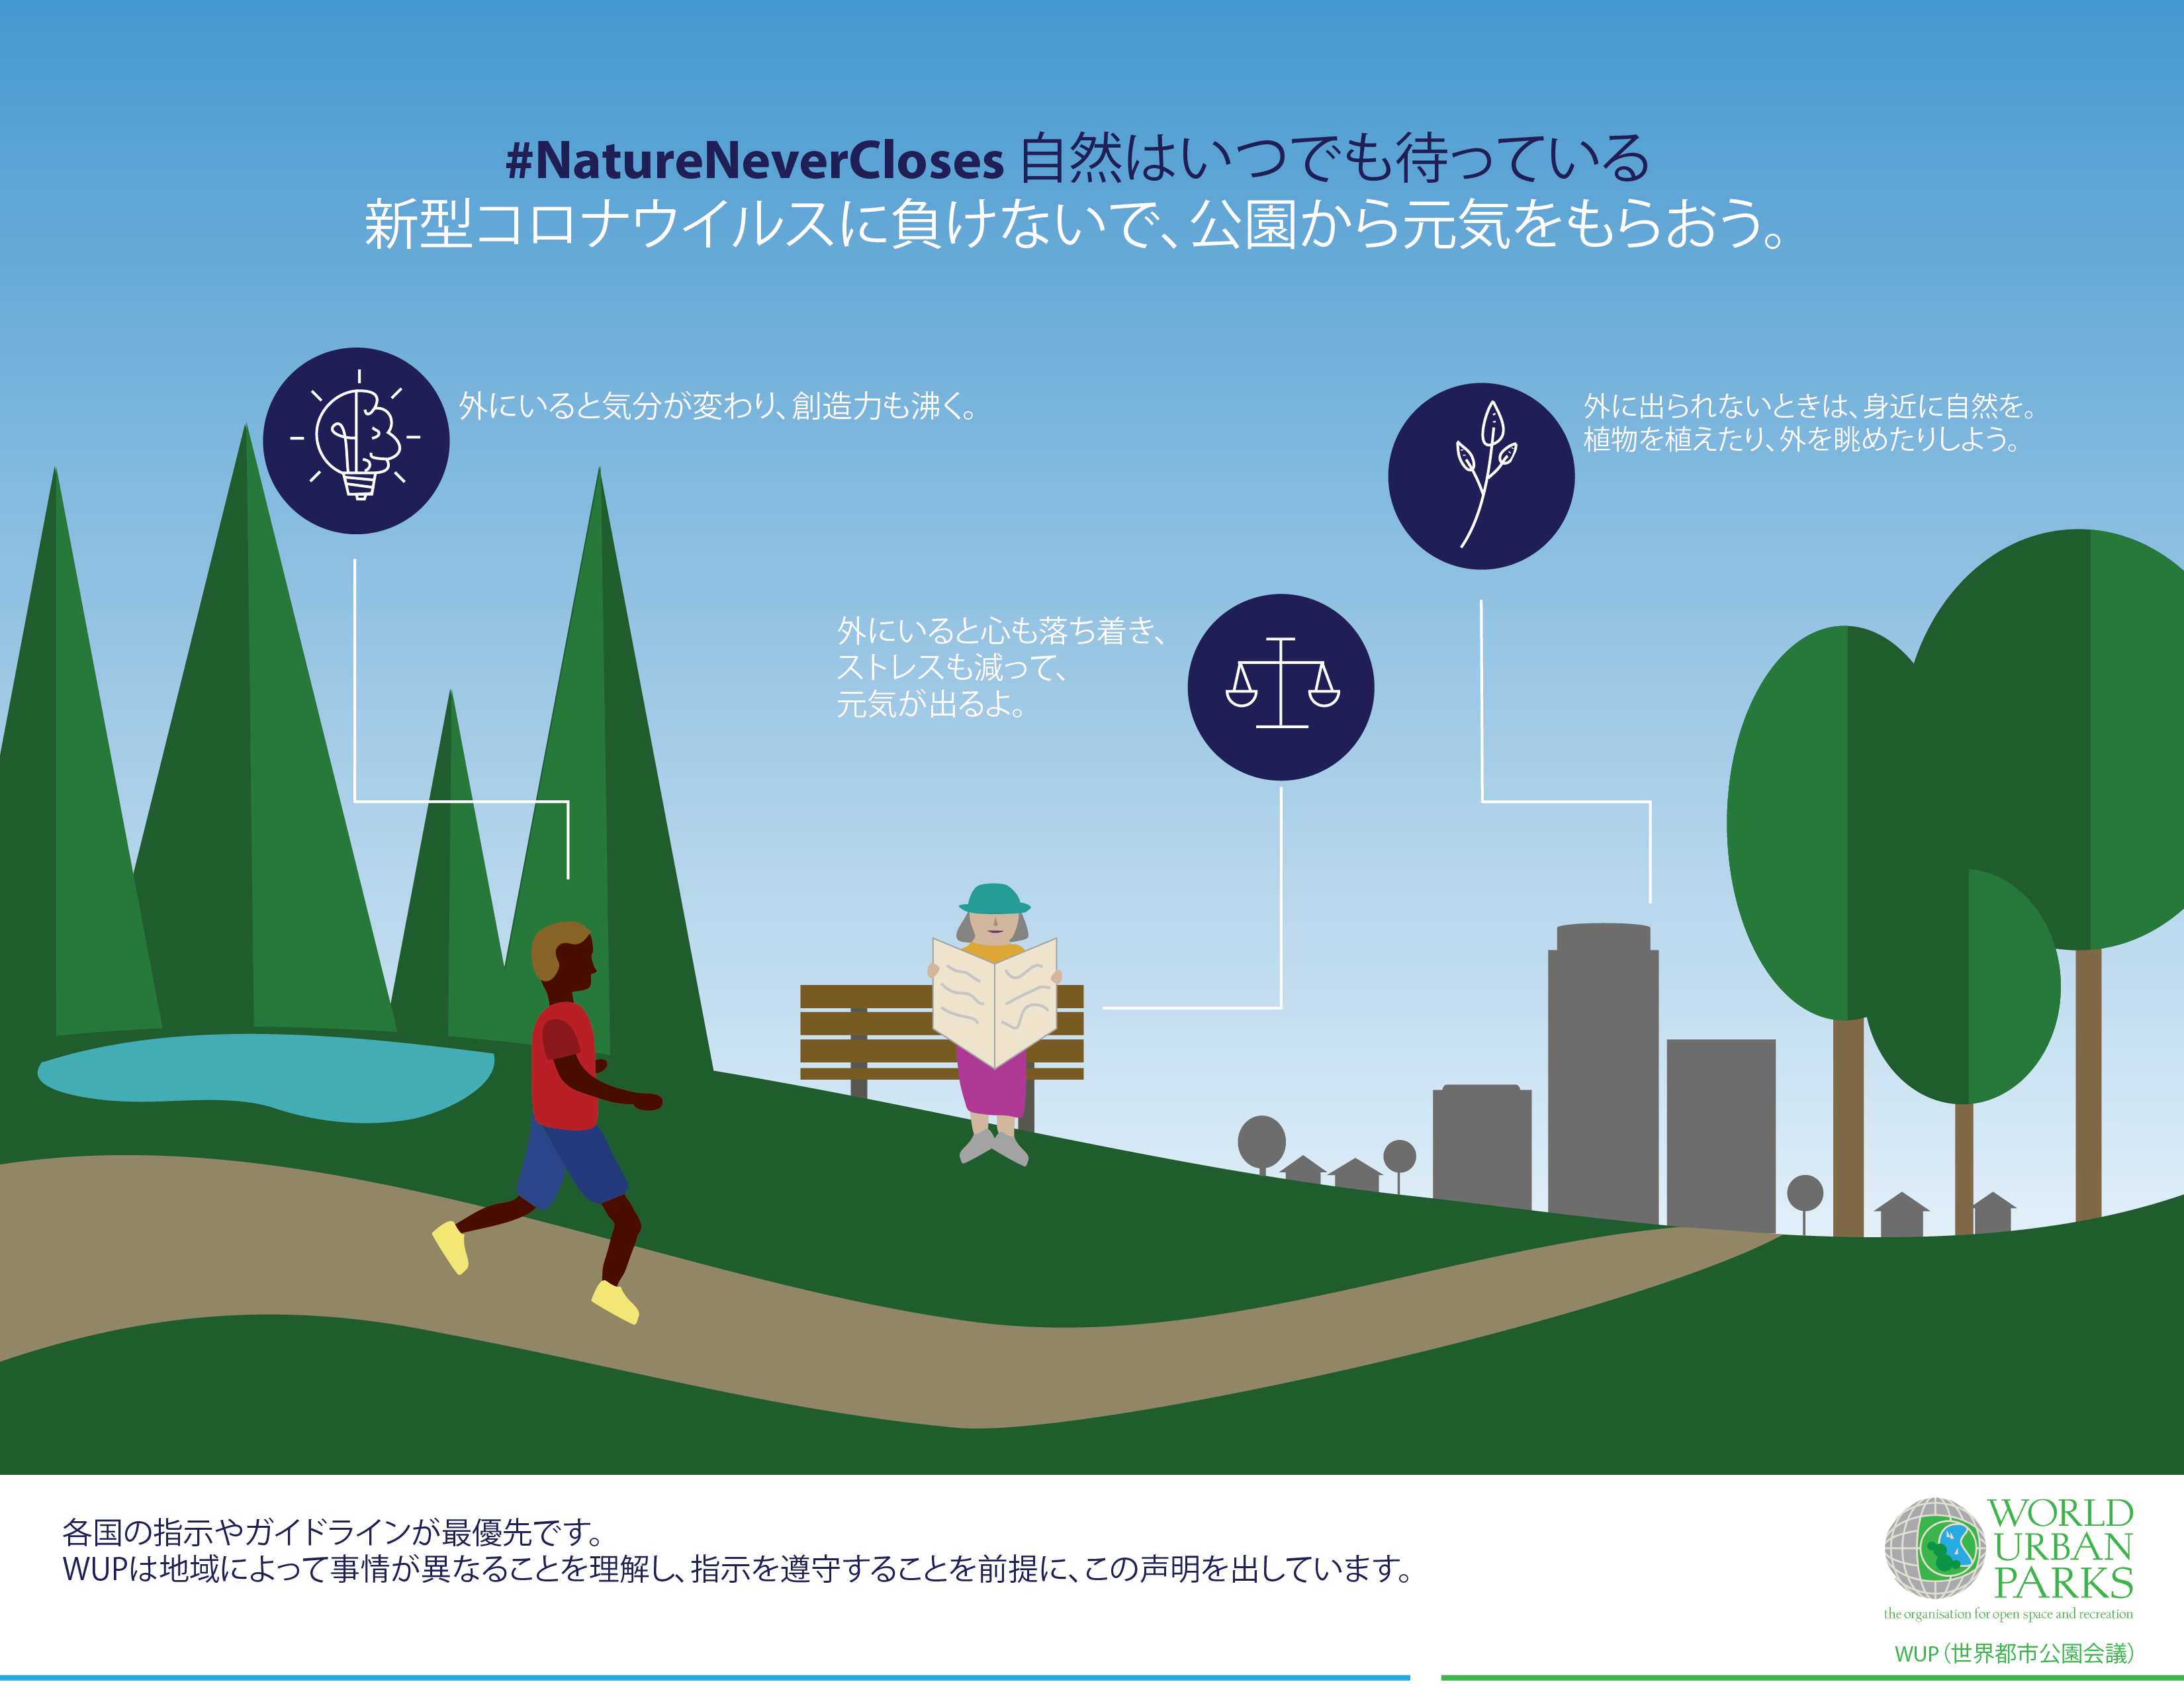 イラスト 新型コロナウイルスを拡げない公園の使い方 World Urban Parks ジャパン